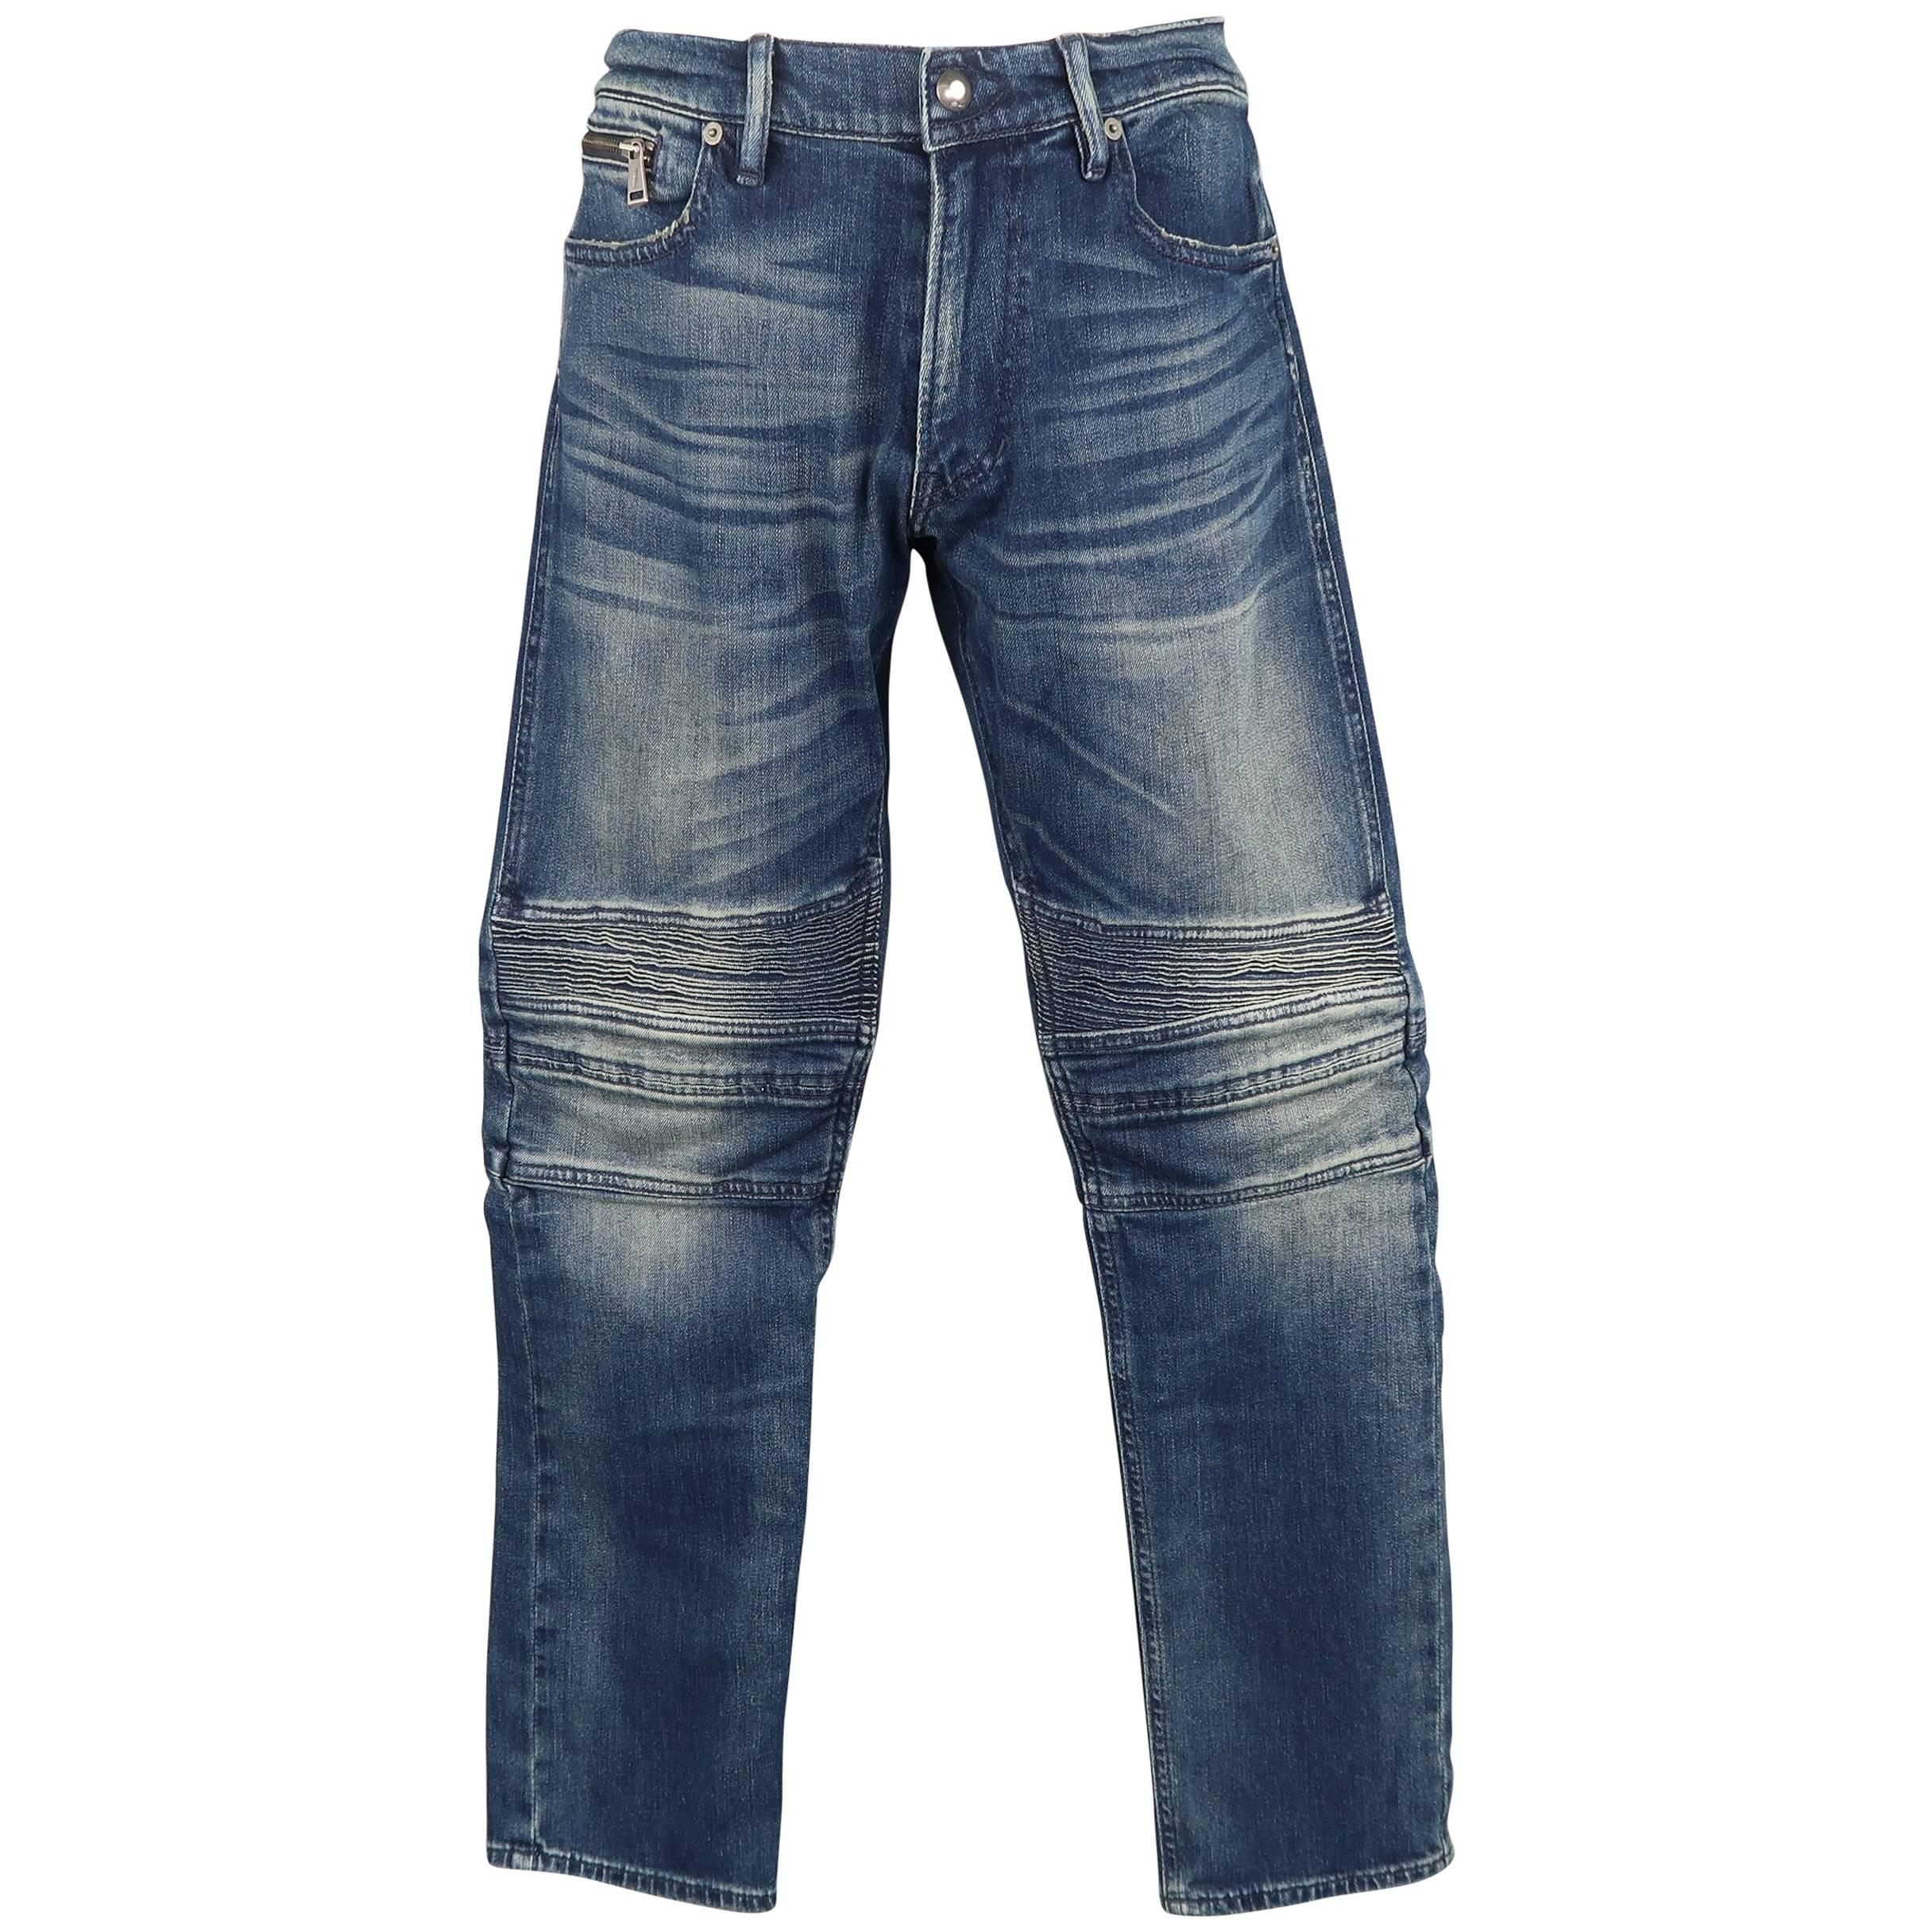 Men's RALPH LAUREN Size 32 Washed Denim Motorcycle Knee Pad Jeans